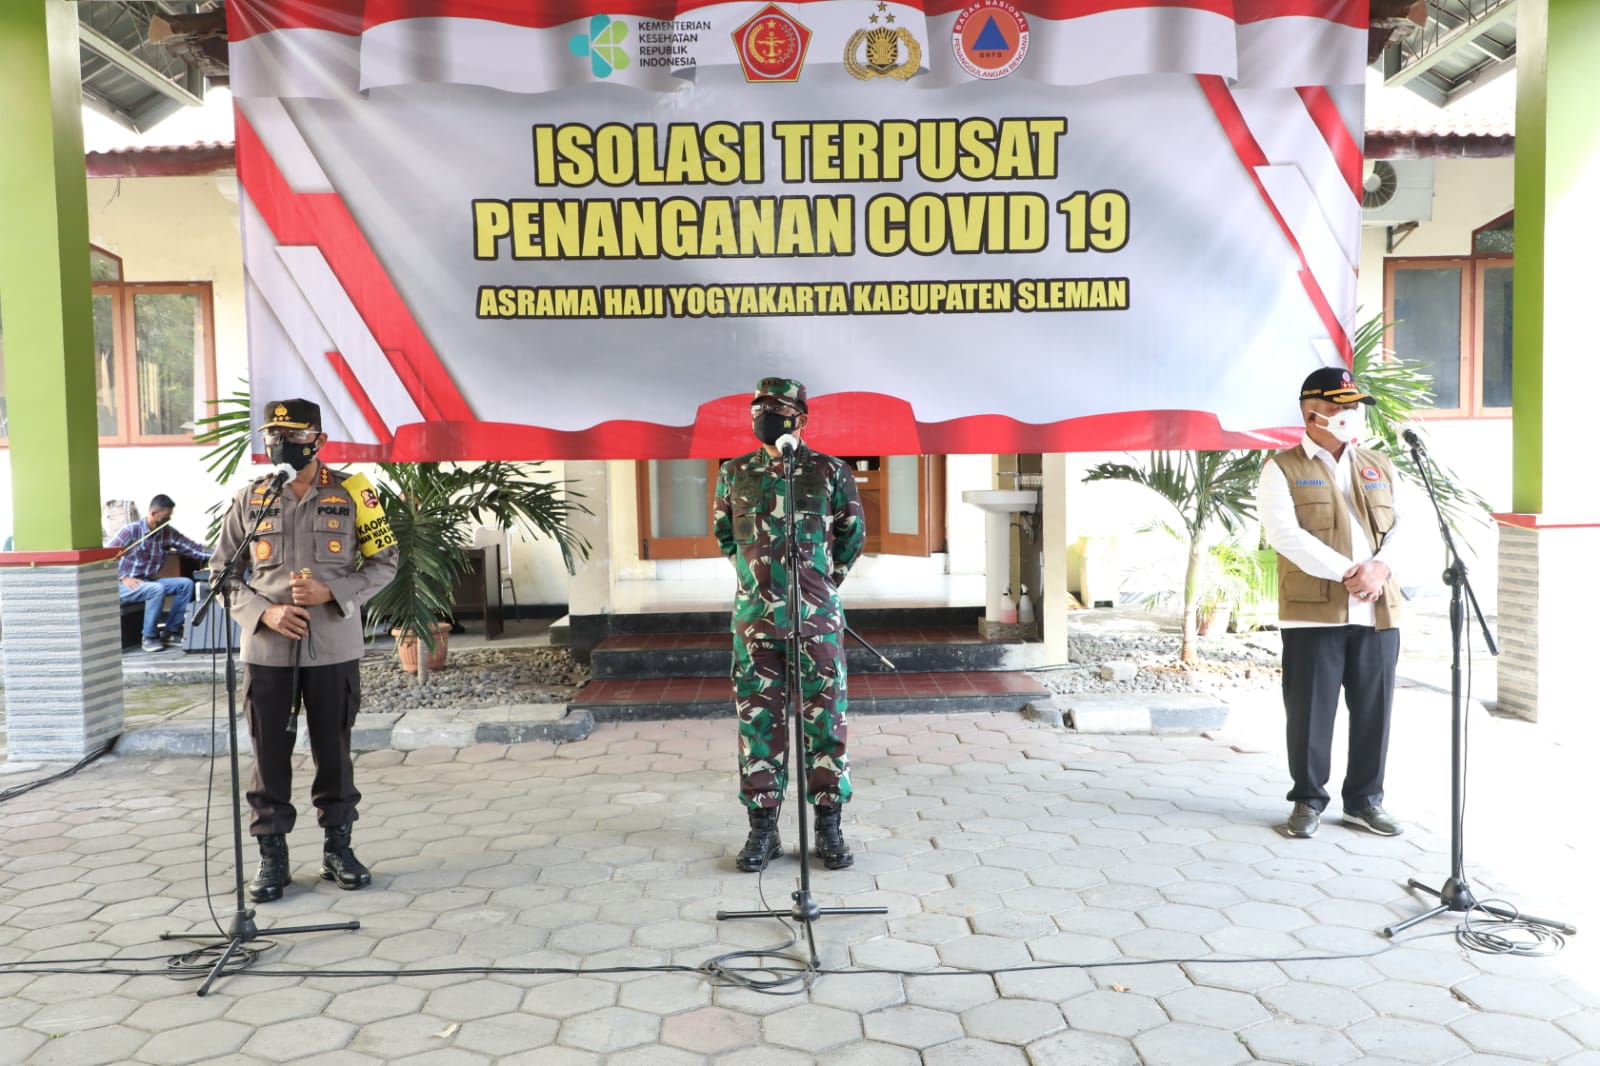 Panglima TNI:Isoter Merupakan Upaya Pemerintah Bantu Penanganan Pasien Covid-19